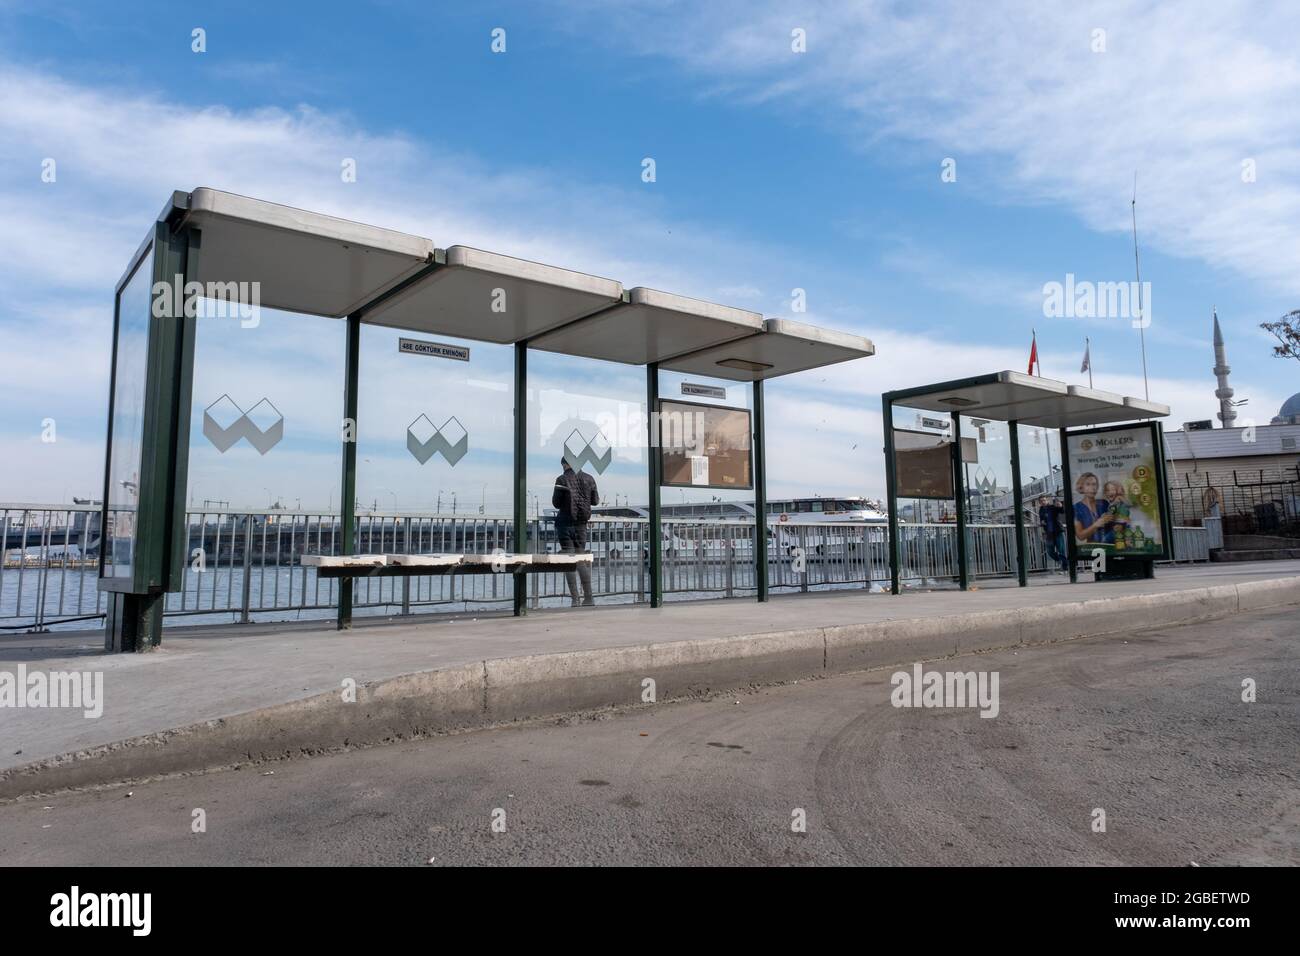 Eminonu, Istanbul, Turchia - 02.18.2021: Fermata dell'autobus nel deposito principale degli autobus vicino alla zona costiera del distretto di Eminonu a Istanbul in un'aria libera con spazio per le copie Foto Stock